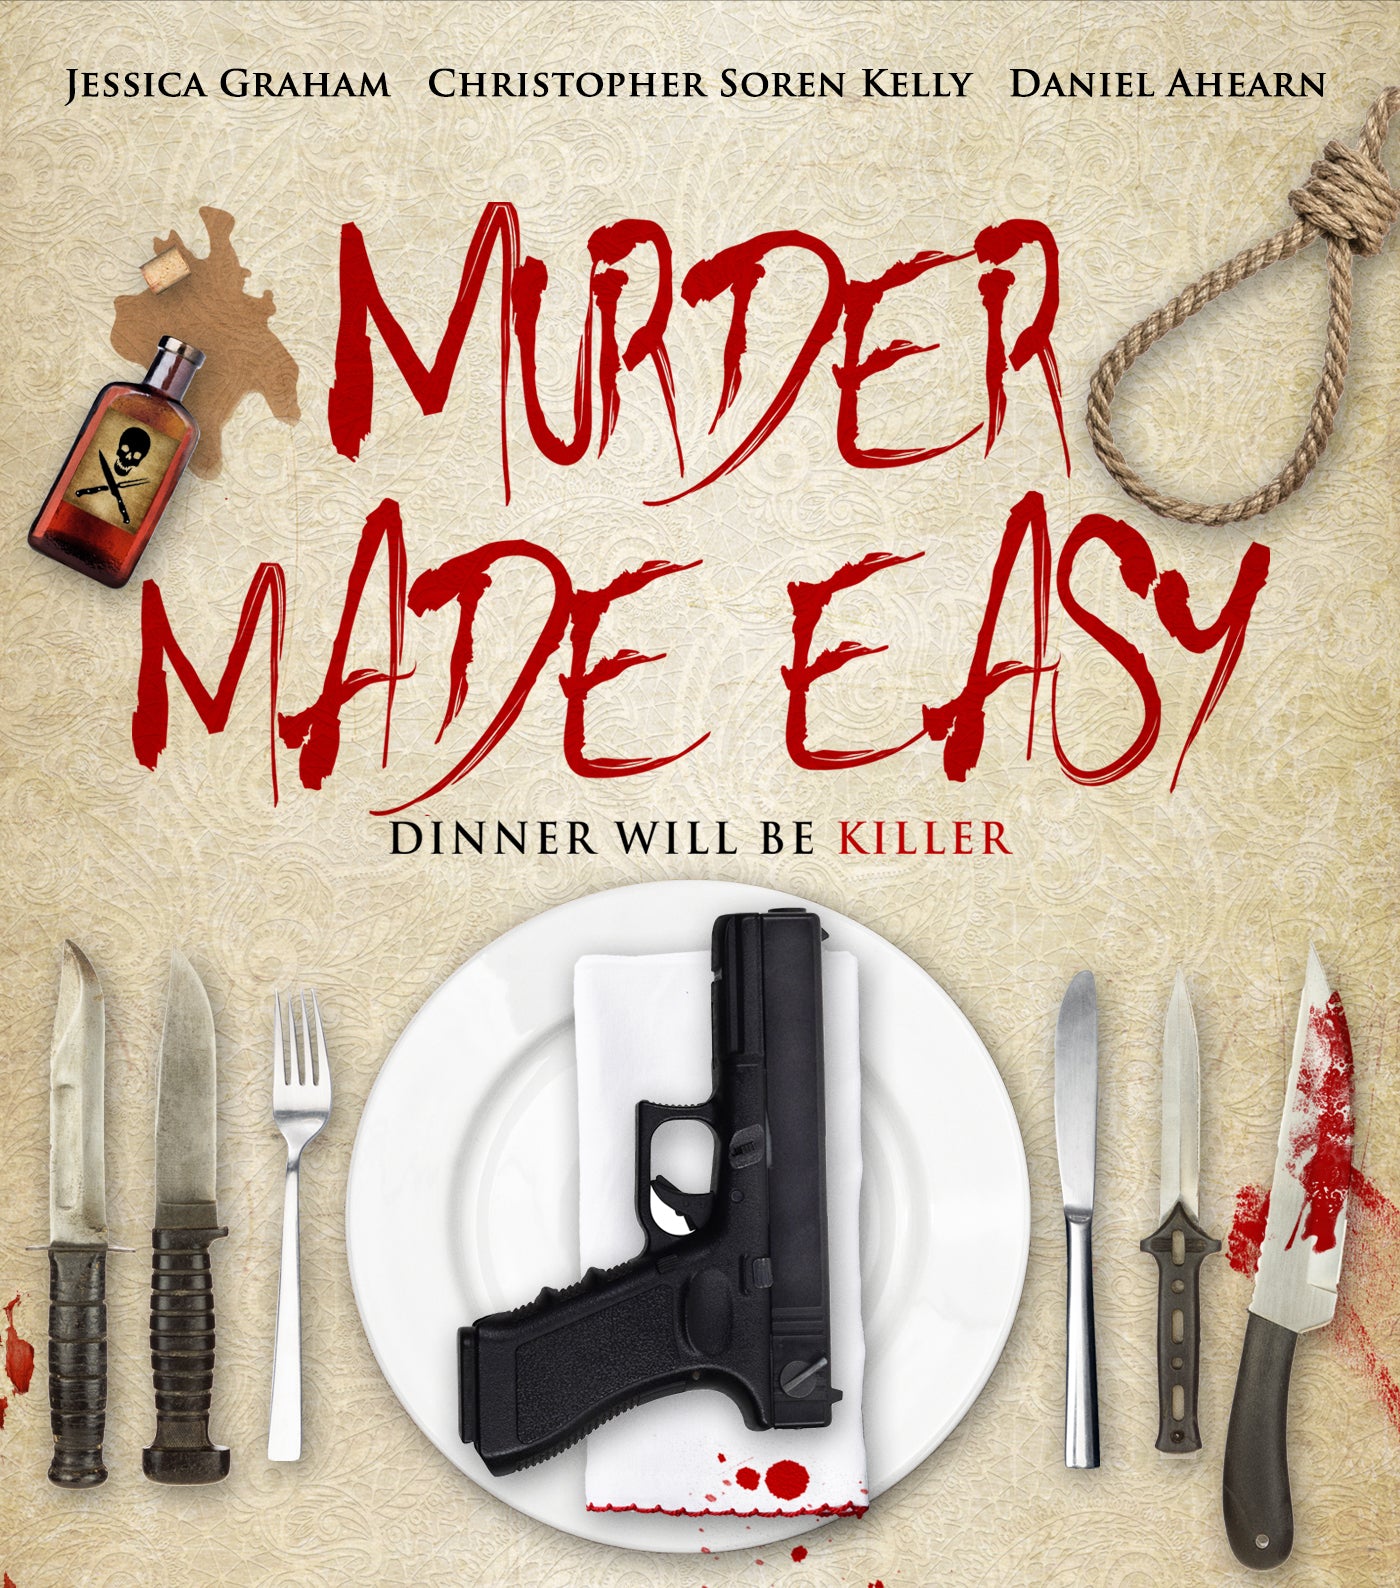 MURDER MADE EASY DVD